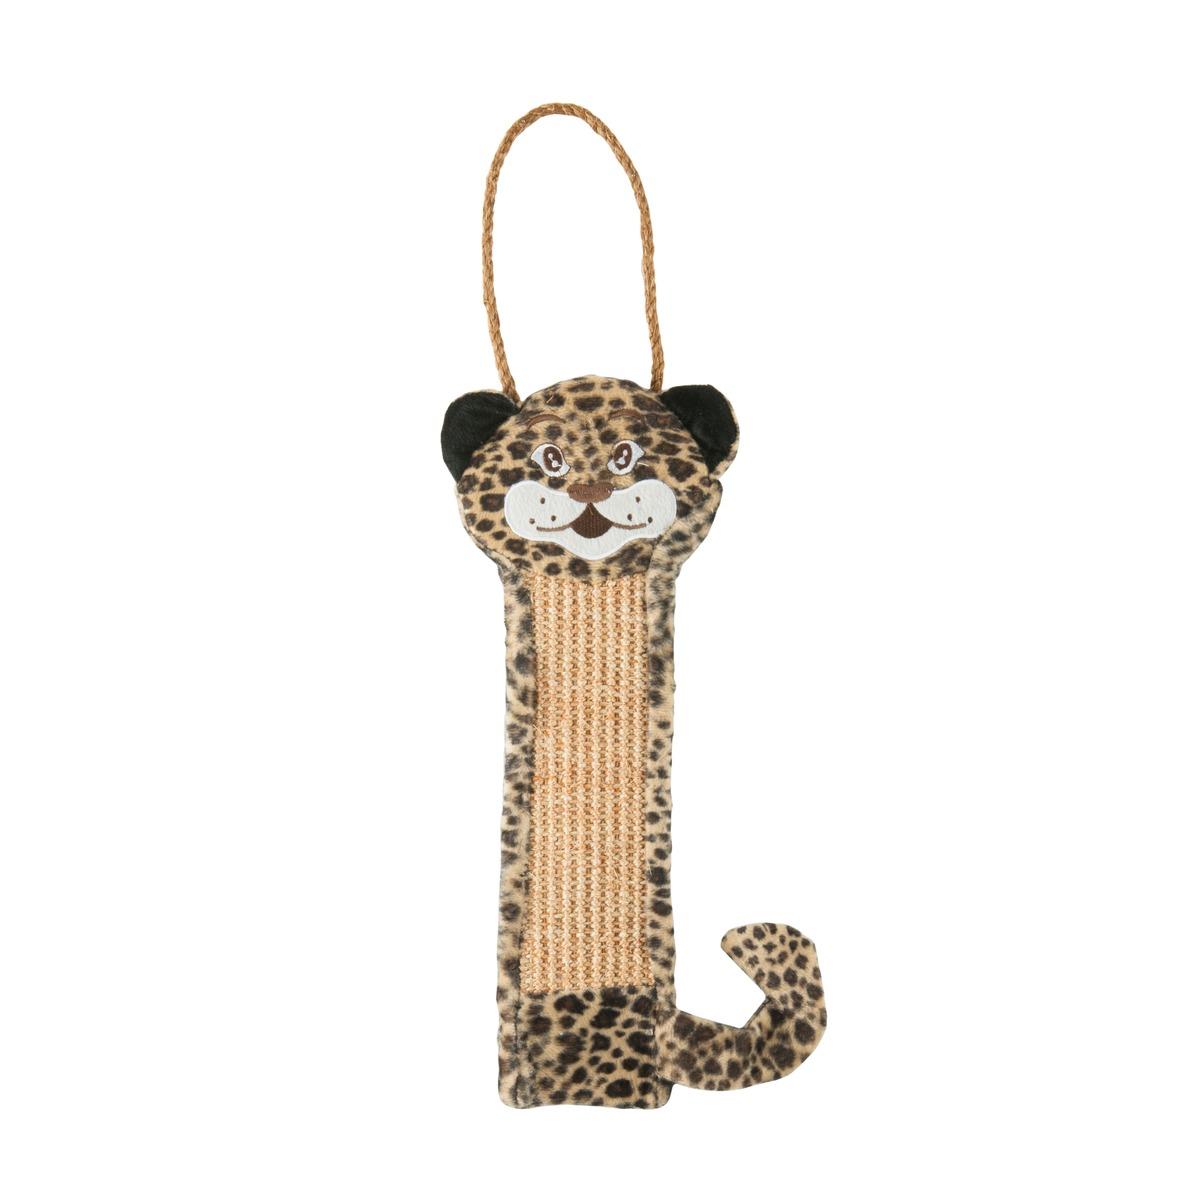 Grattoir pour chat en forme de léopard - 40 x 15 cm - Beige